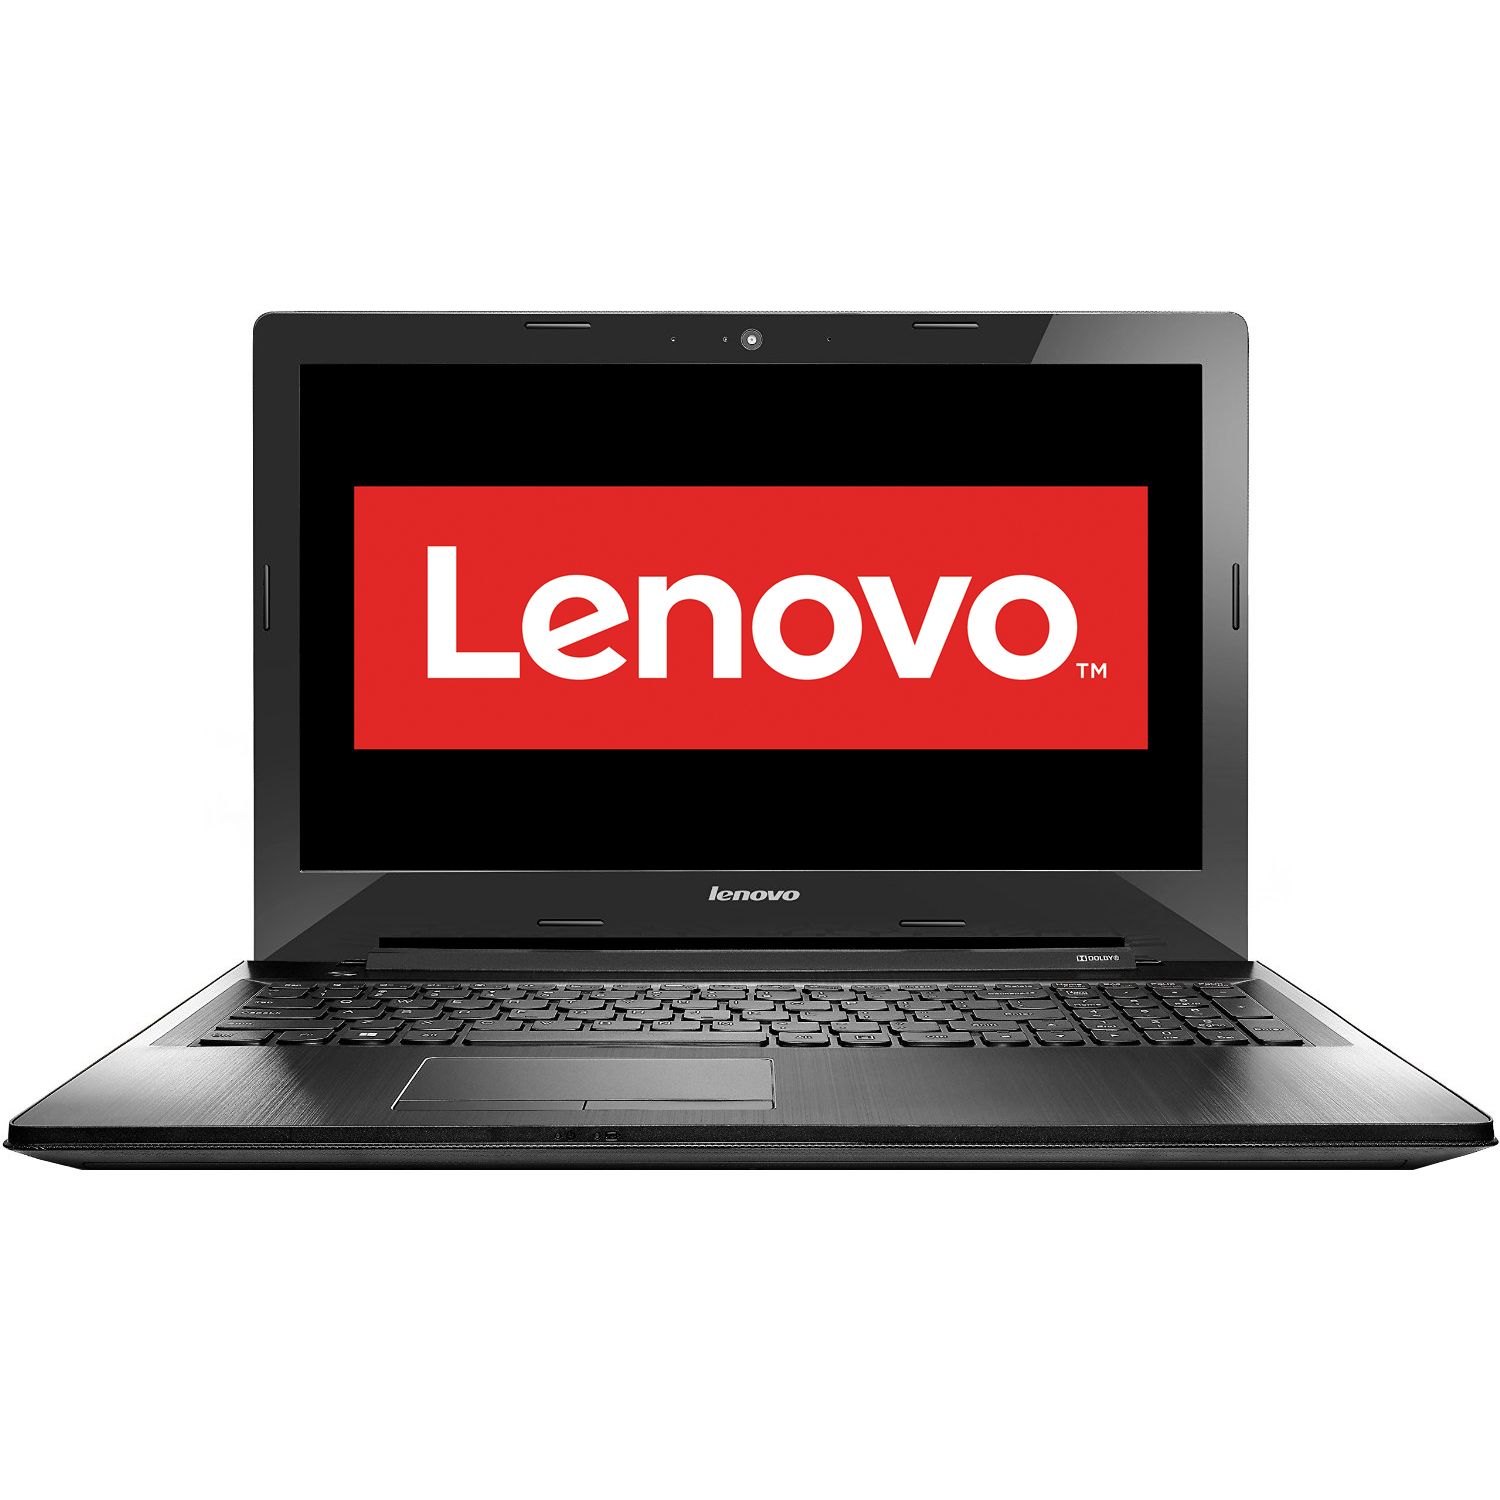 Laptop Lenovo G50-80, Intel Core i3-4005U 1.70GHz, 4GB DDR3, 500GB SATA, DVD-RW, 15.6 Inch, Webcam, Grad A-